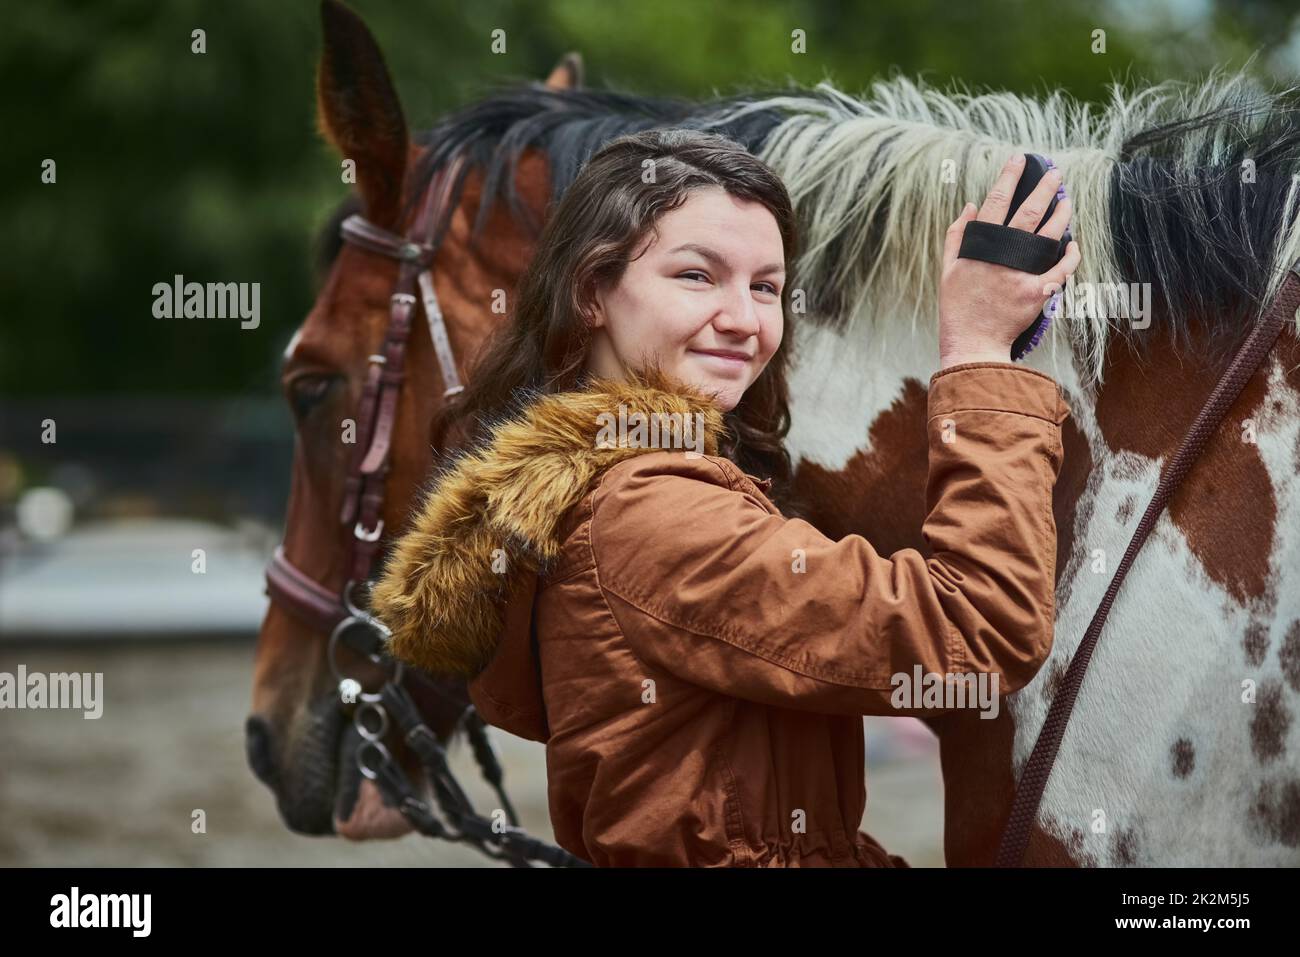 Quien dijo que no puedes comprar felicidad nunca tuvo un pony. Foto de una adolescente cepillando su pelo de ponys en una granja. Foto de stock